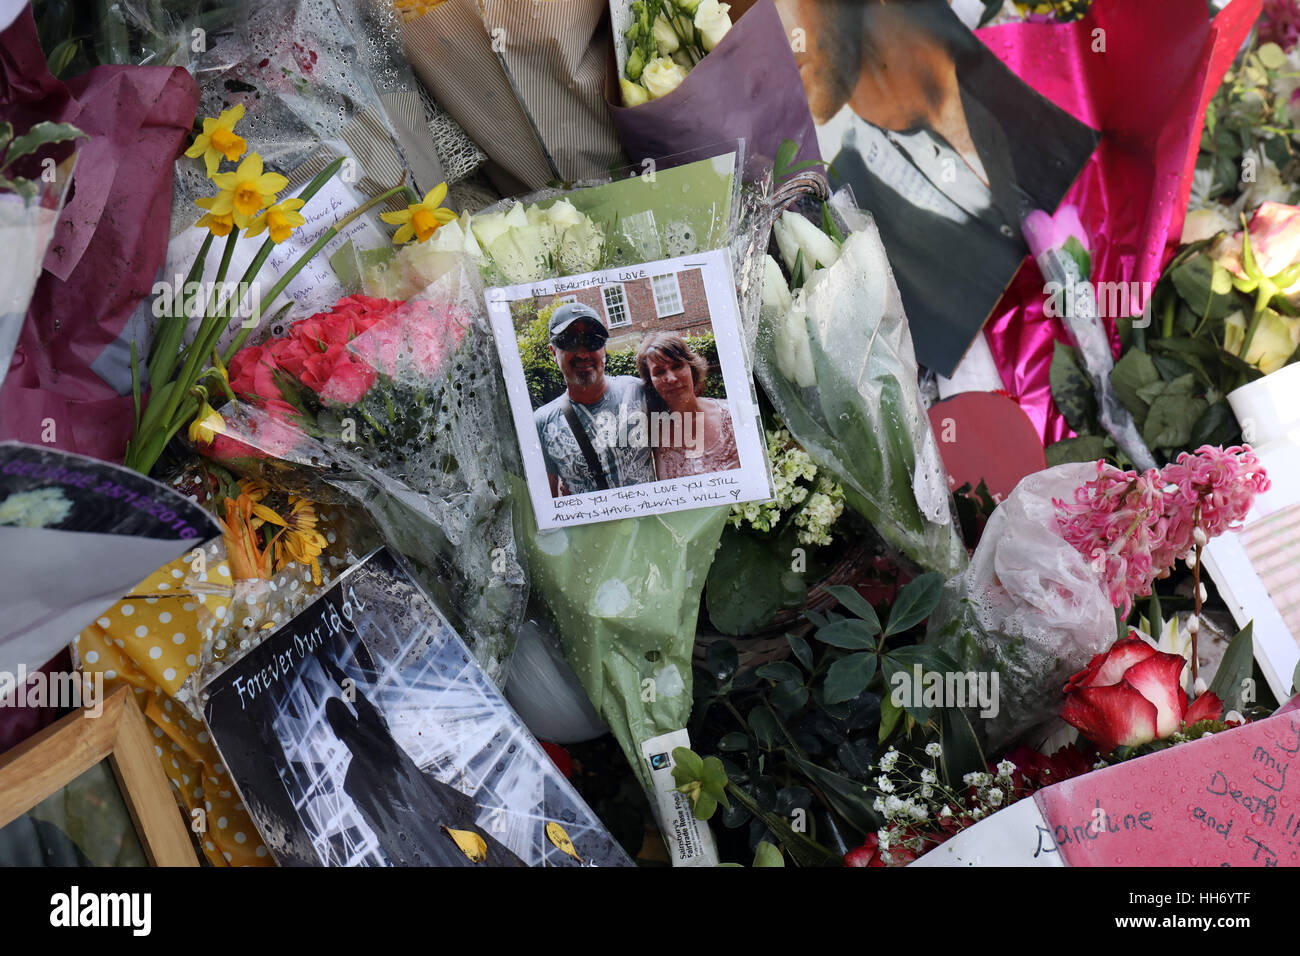 Hommages à l'extérieur de la maison de George Michael qui est mort le jour de Noël 2016 photographies de fleurs et des messages à l'extérieur de son domicile Banque D'Images